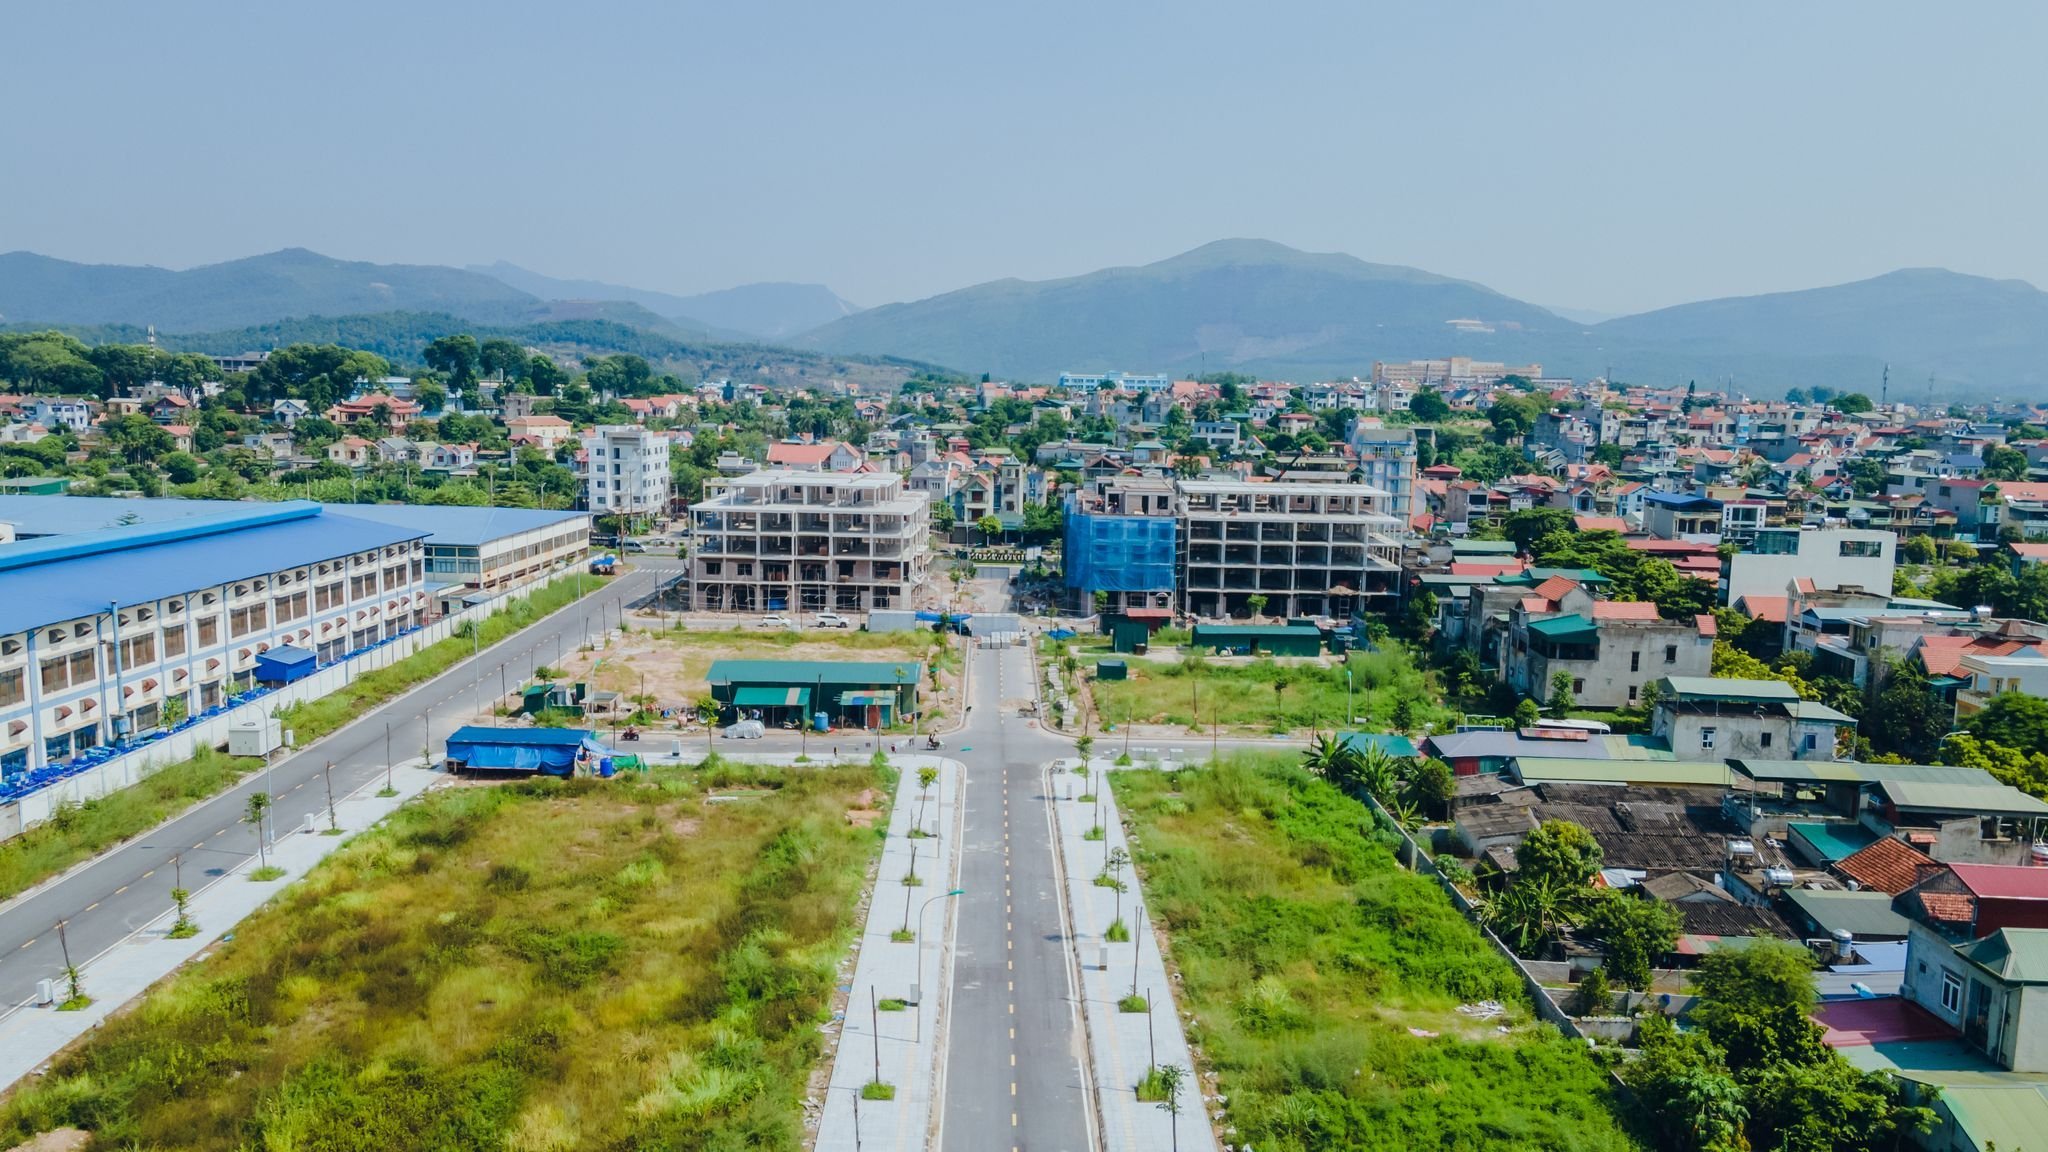 CHÍNH CHỦ bán nhanh căn nhà nghỉ khách sạn xây 5 tầng mặt đường 60m, thành phố Uông Bí - Quảng Ninh 5